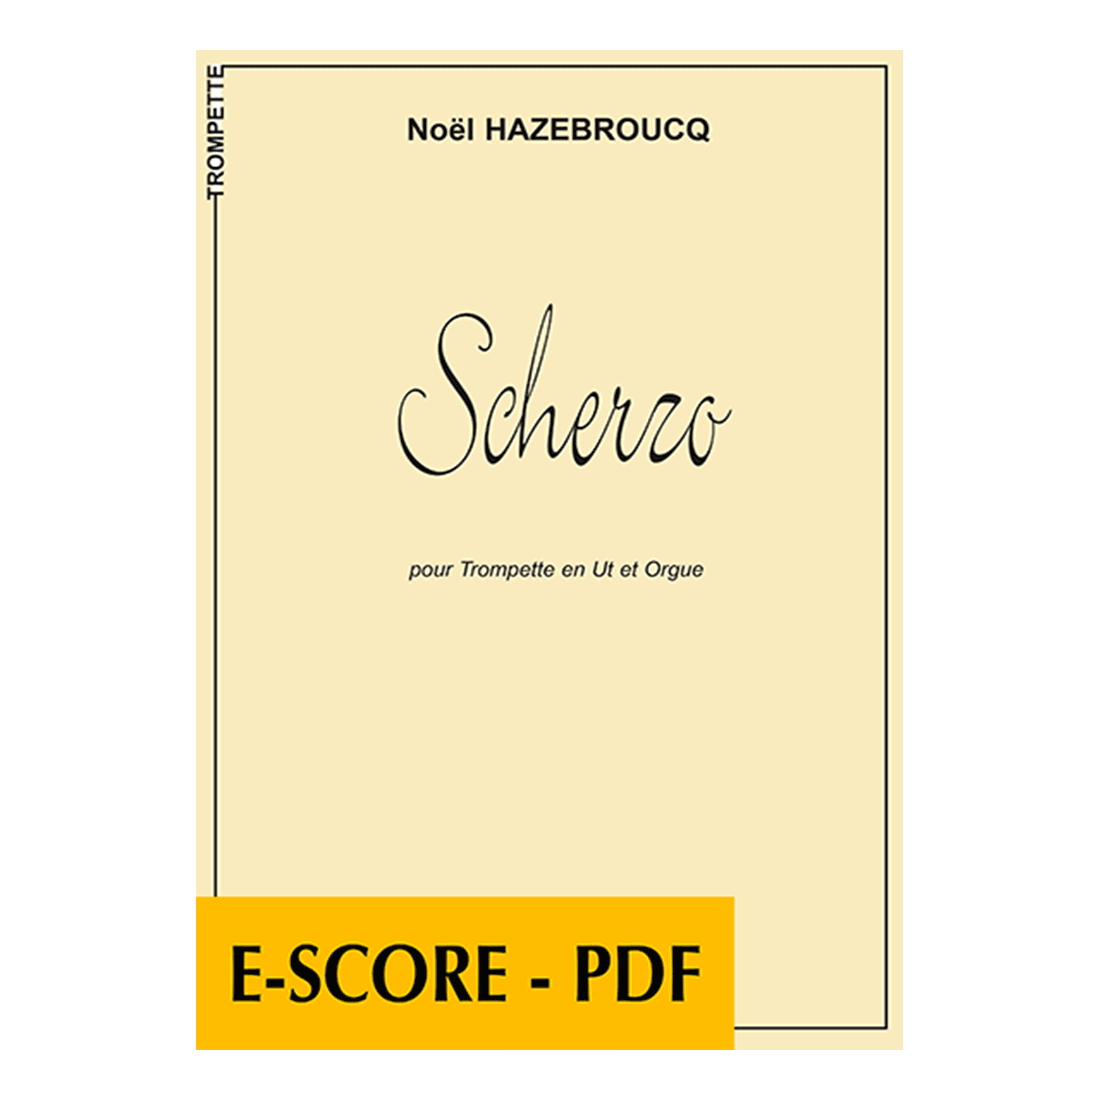 Scherzo für Trompete und Orgel - E-score PDF